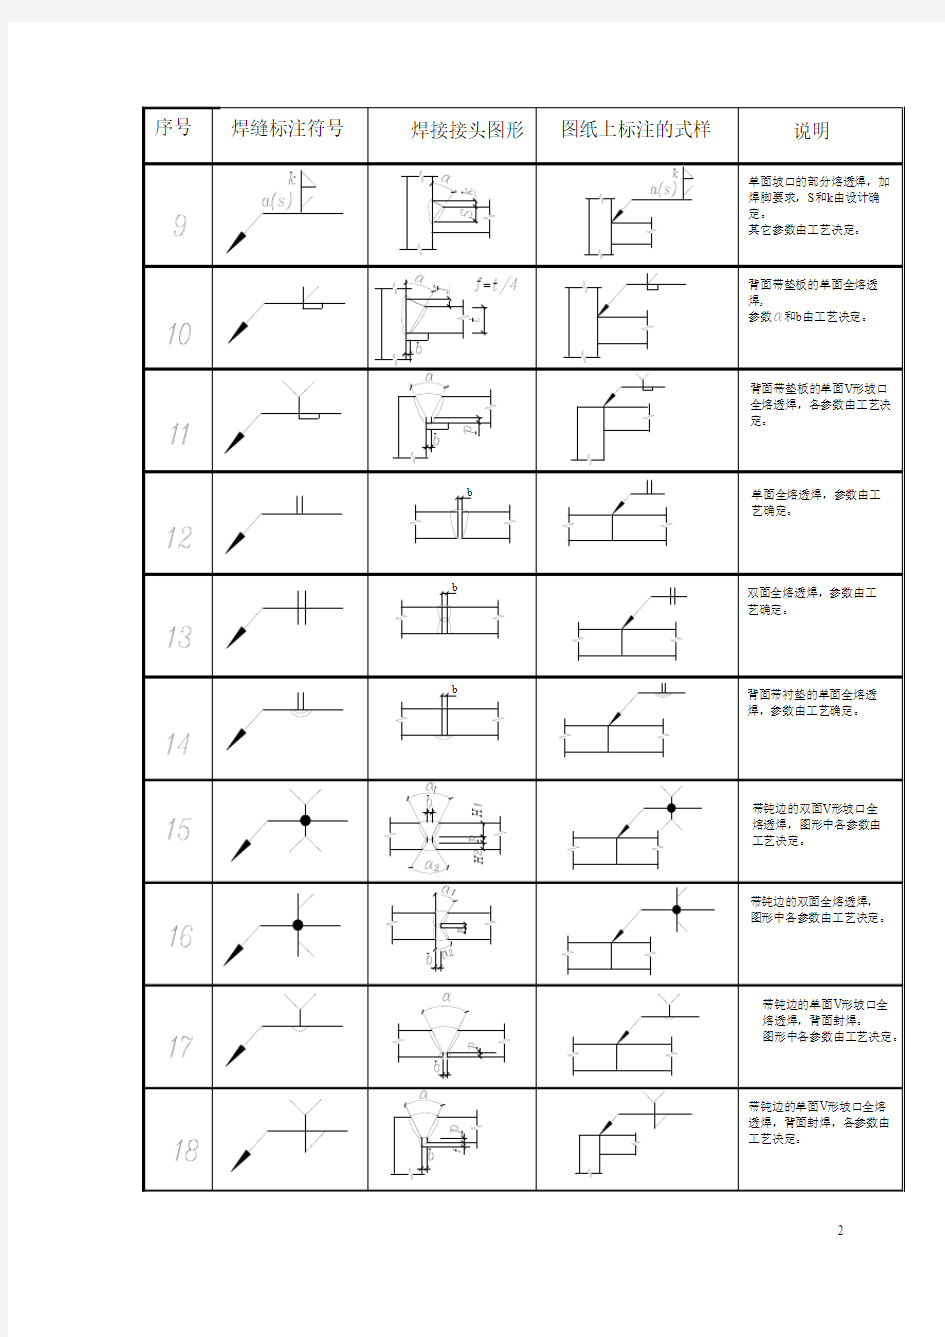 钢结构设计图中的焊接符号标注大全(图)0204192302